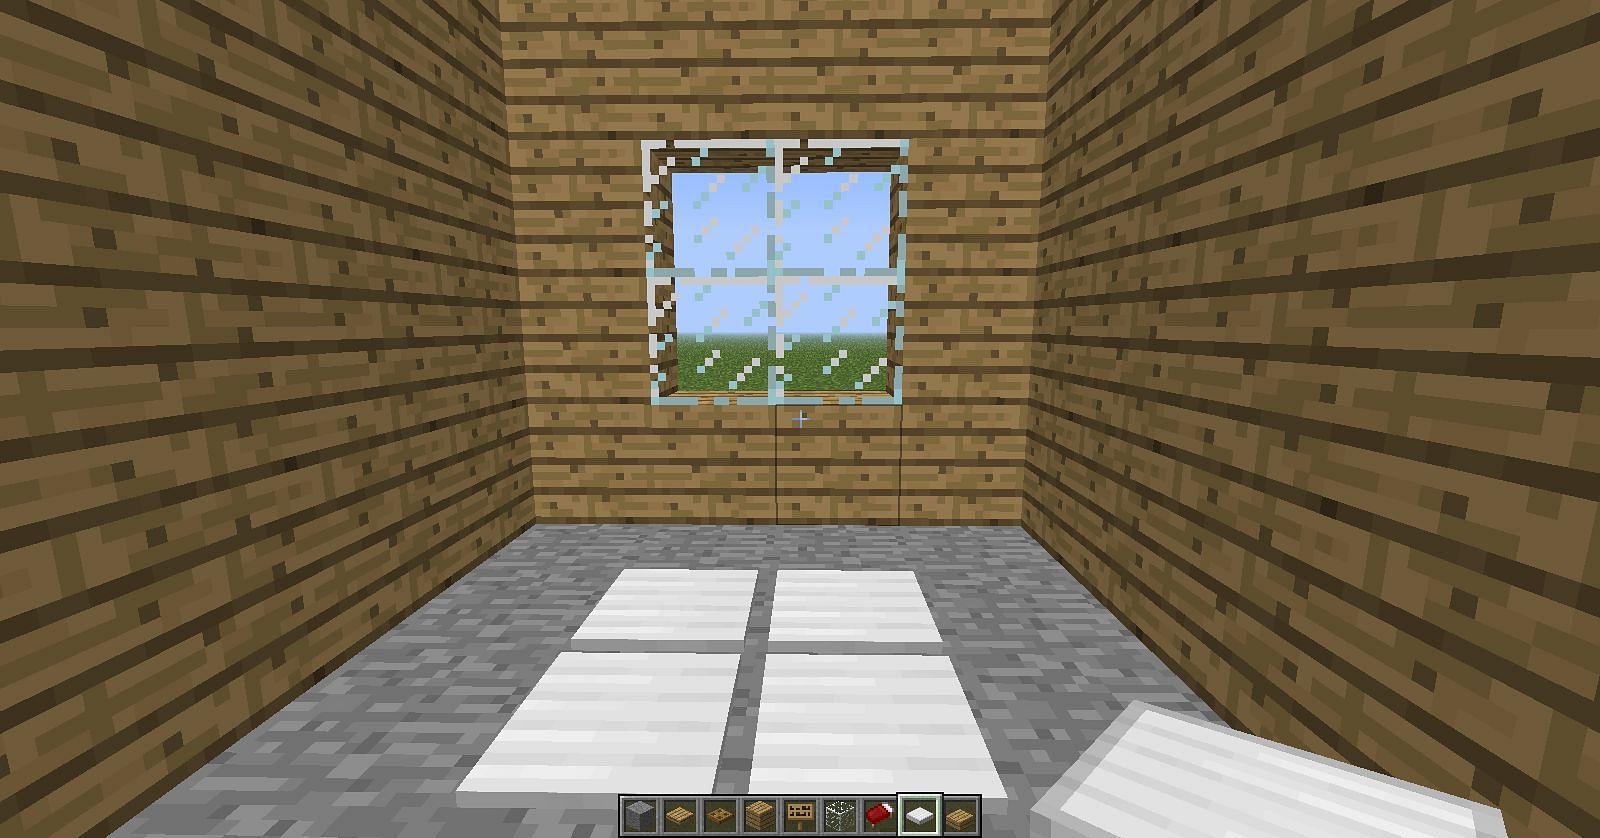 Un jugador usa placas de presión de hierro para crear la ilusión de la luz solar proyectada en el piso a través de una ventana (Imagen a través de Mojang)